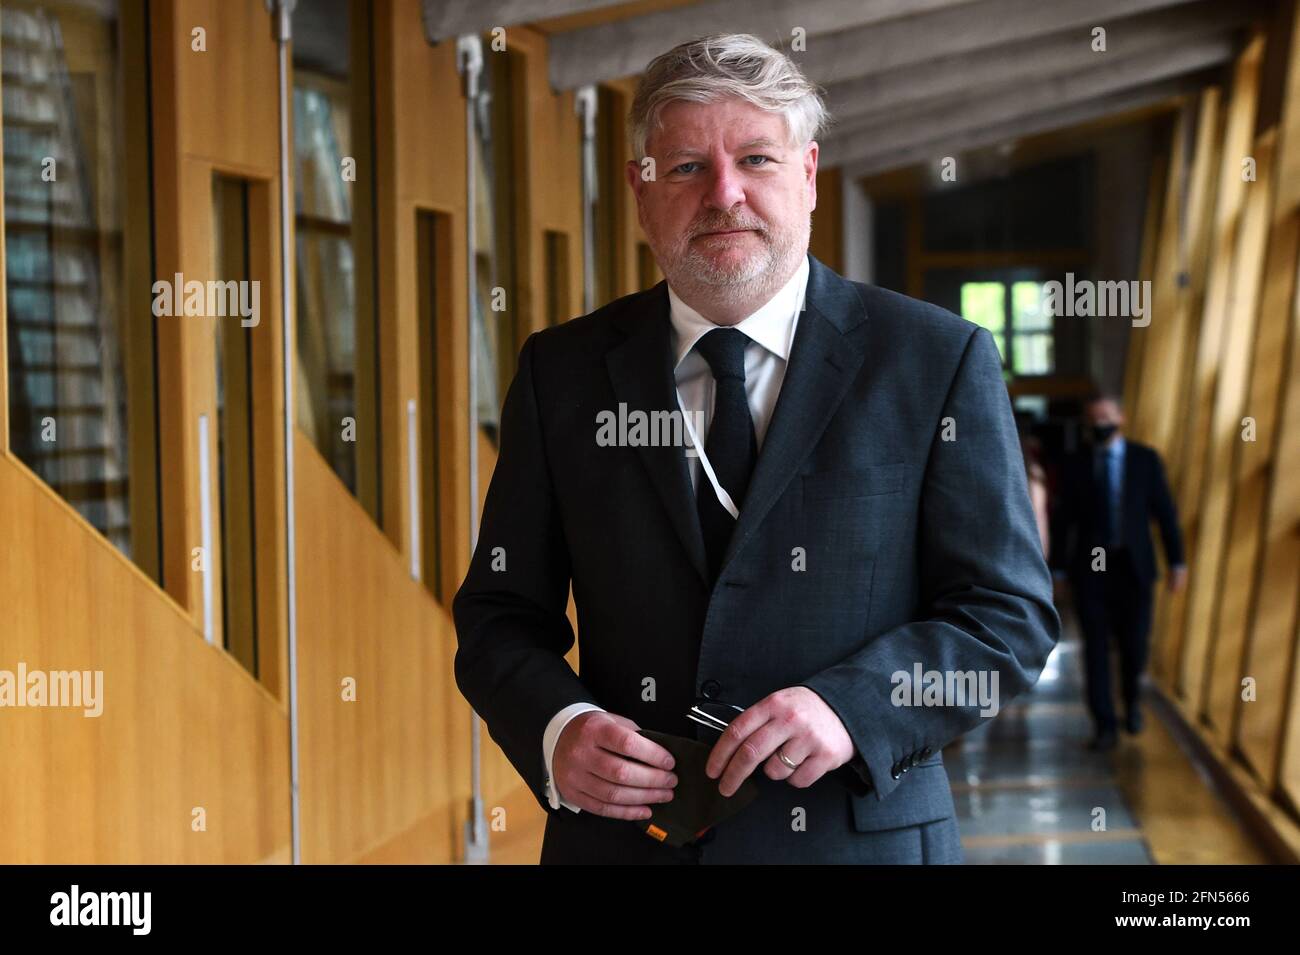 Parti national écossais MSP Angus Robertson arrive pour l'élection du nouveau président adjoint au Parlement écossais à Édimbourg. Date de la photo: Vendredi 14 mai 2021. Banque D'Images